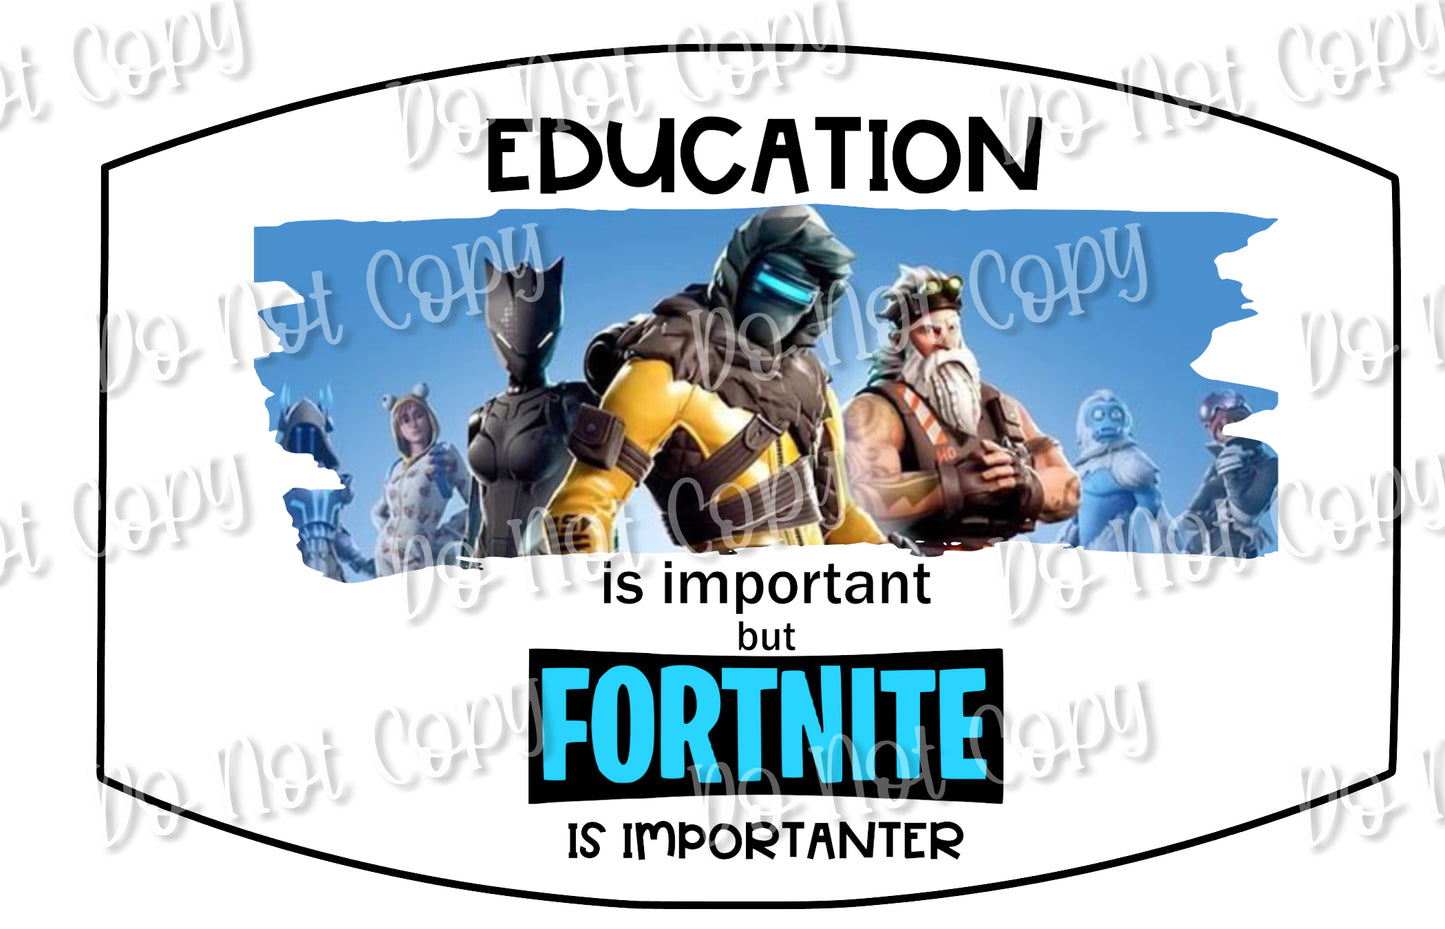 Fortnite education